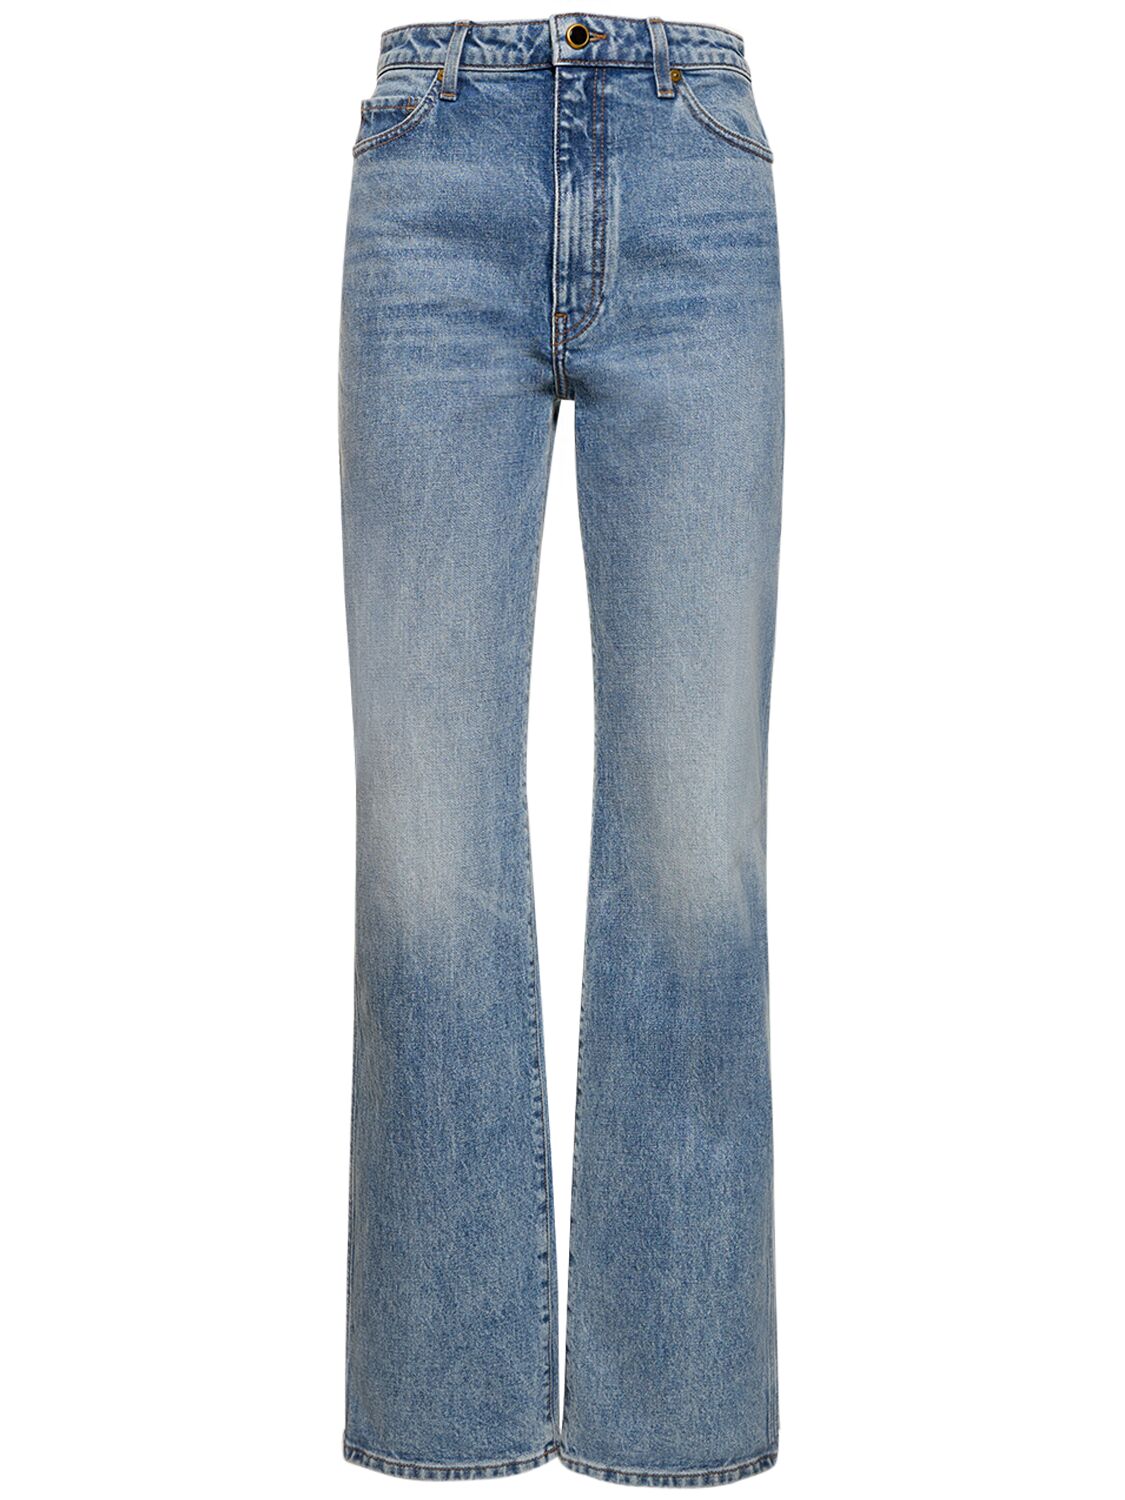 Mujer Jeans Rectos Con Talle Alto 25 - KHAITE - Modalova